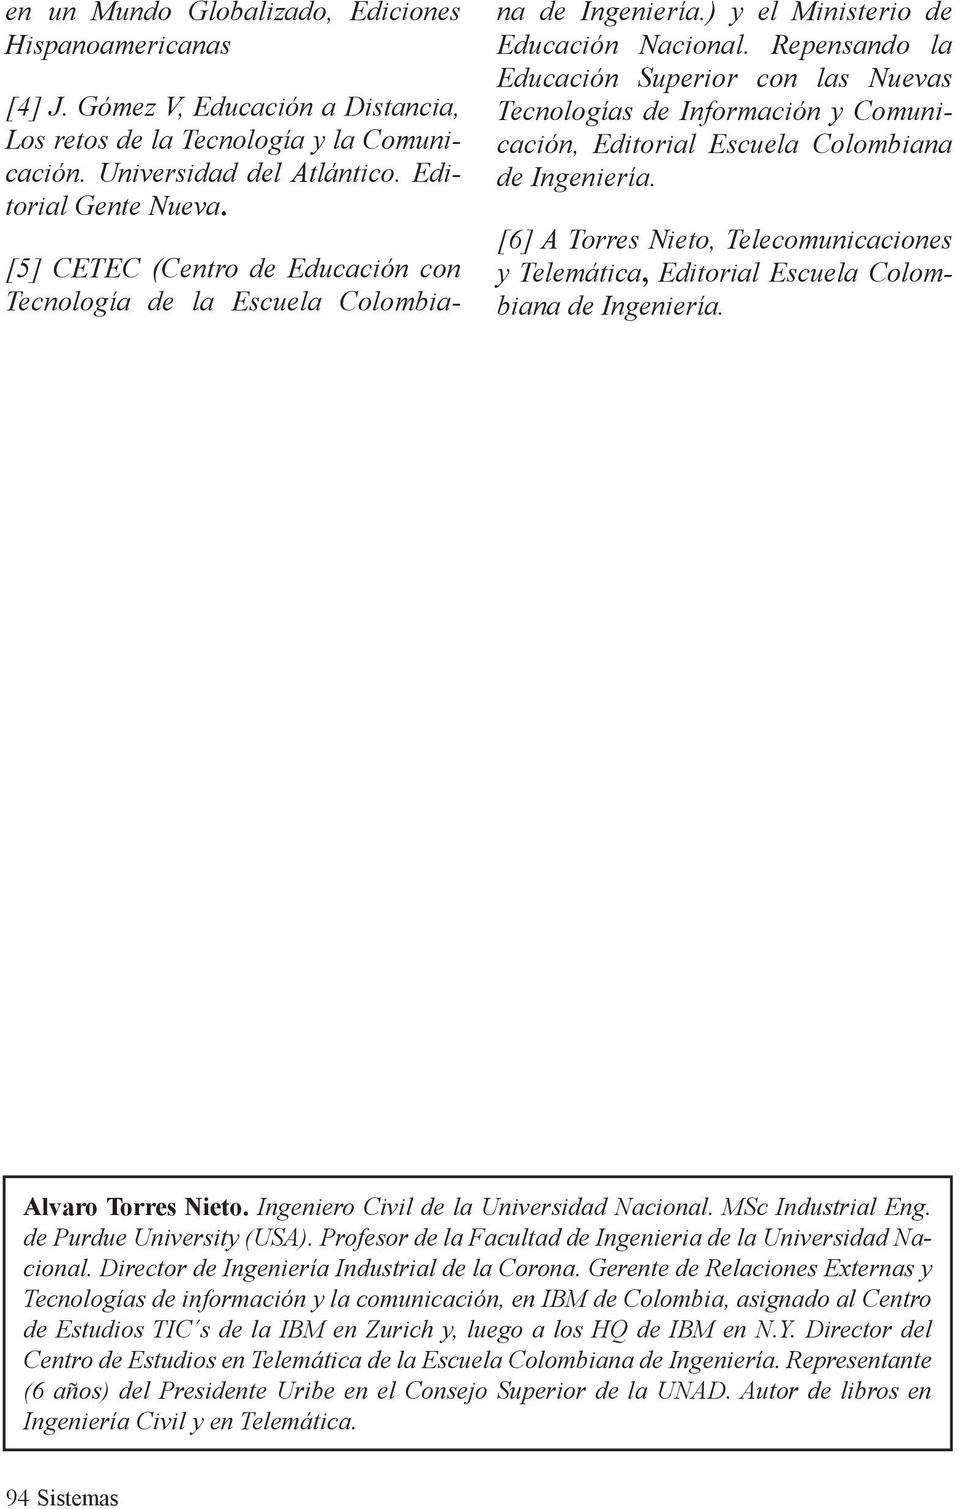 Repensando la Educación Superior con las Nuevas Tecnologías de Información y Comunicación, Editorial Escuela Colombiana de Ingeniería.